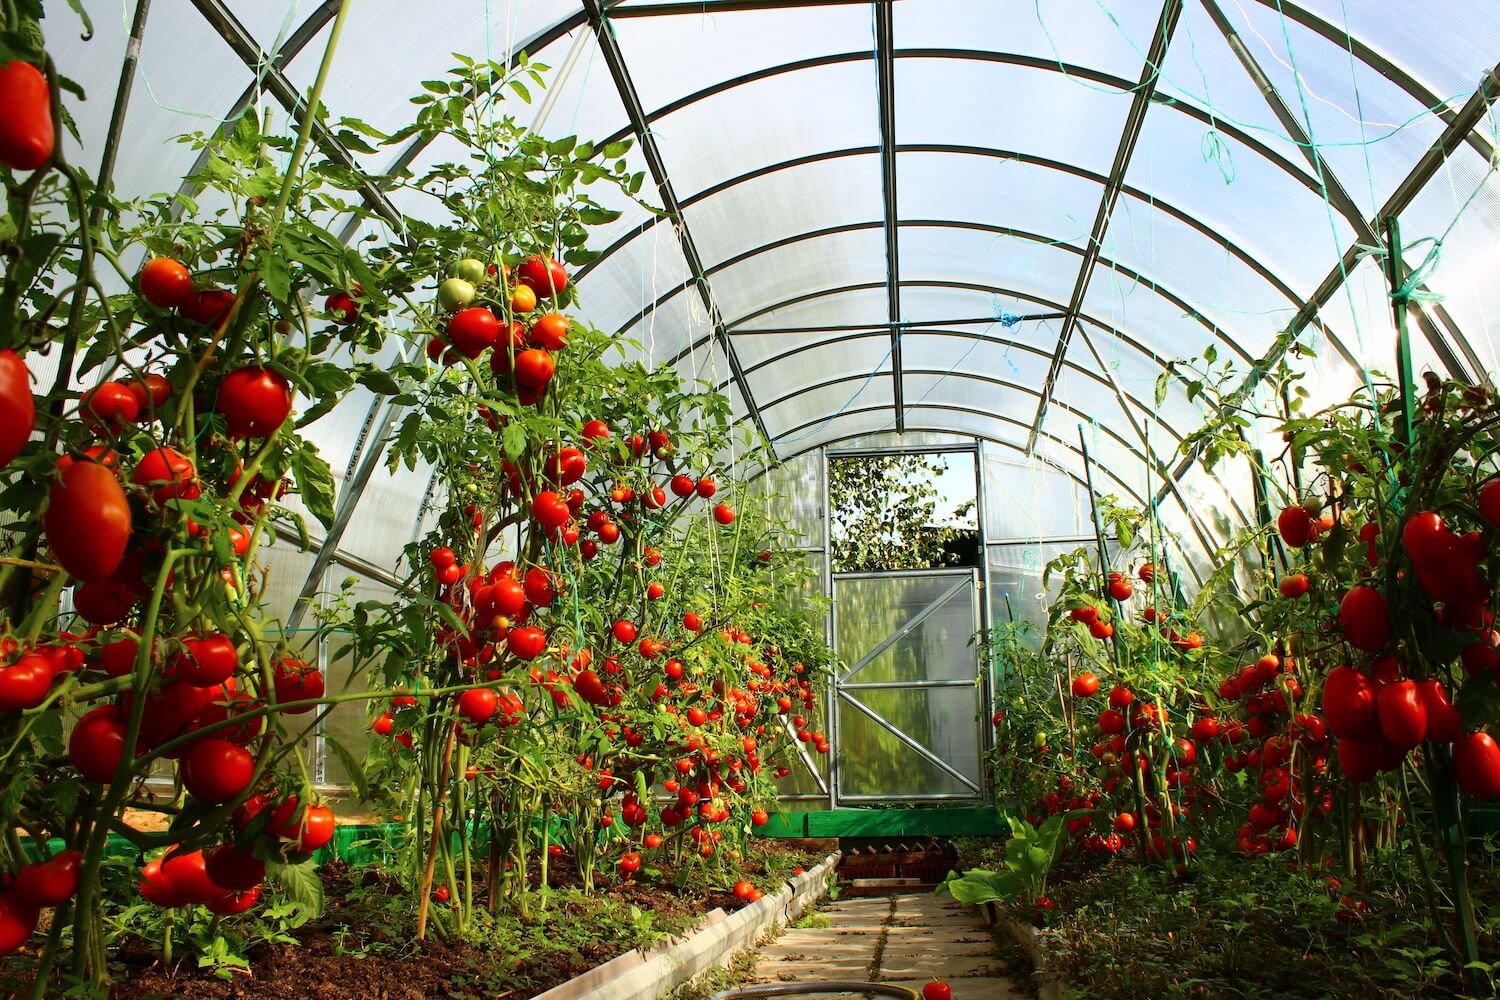 In welcher Entfernung sollen Tomaten in einem Gewächshaus gepflanzt werden?